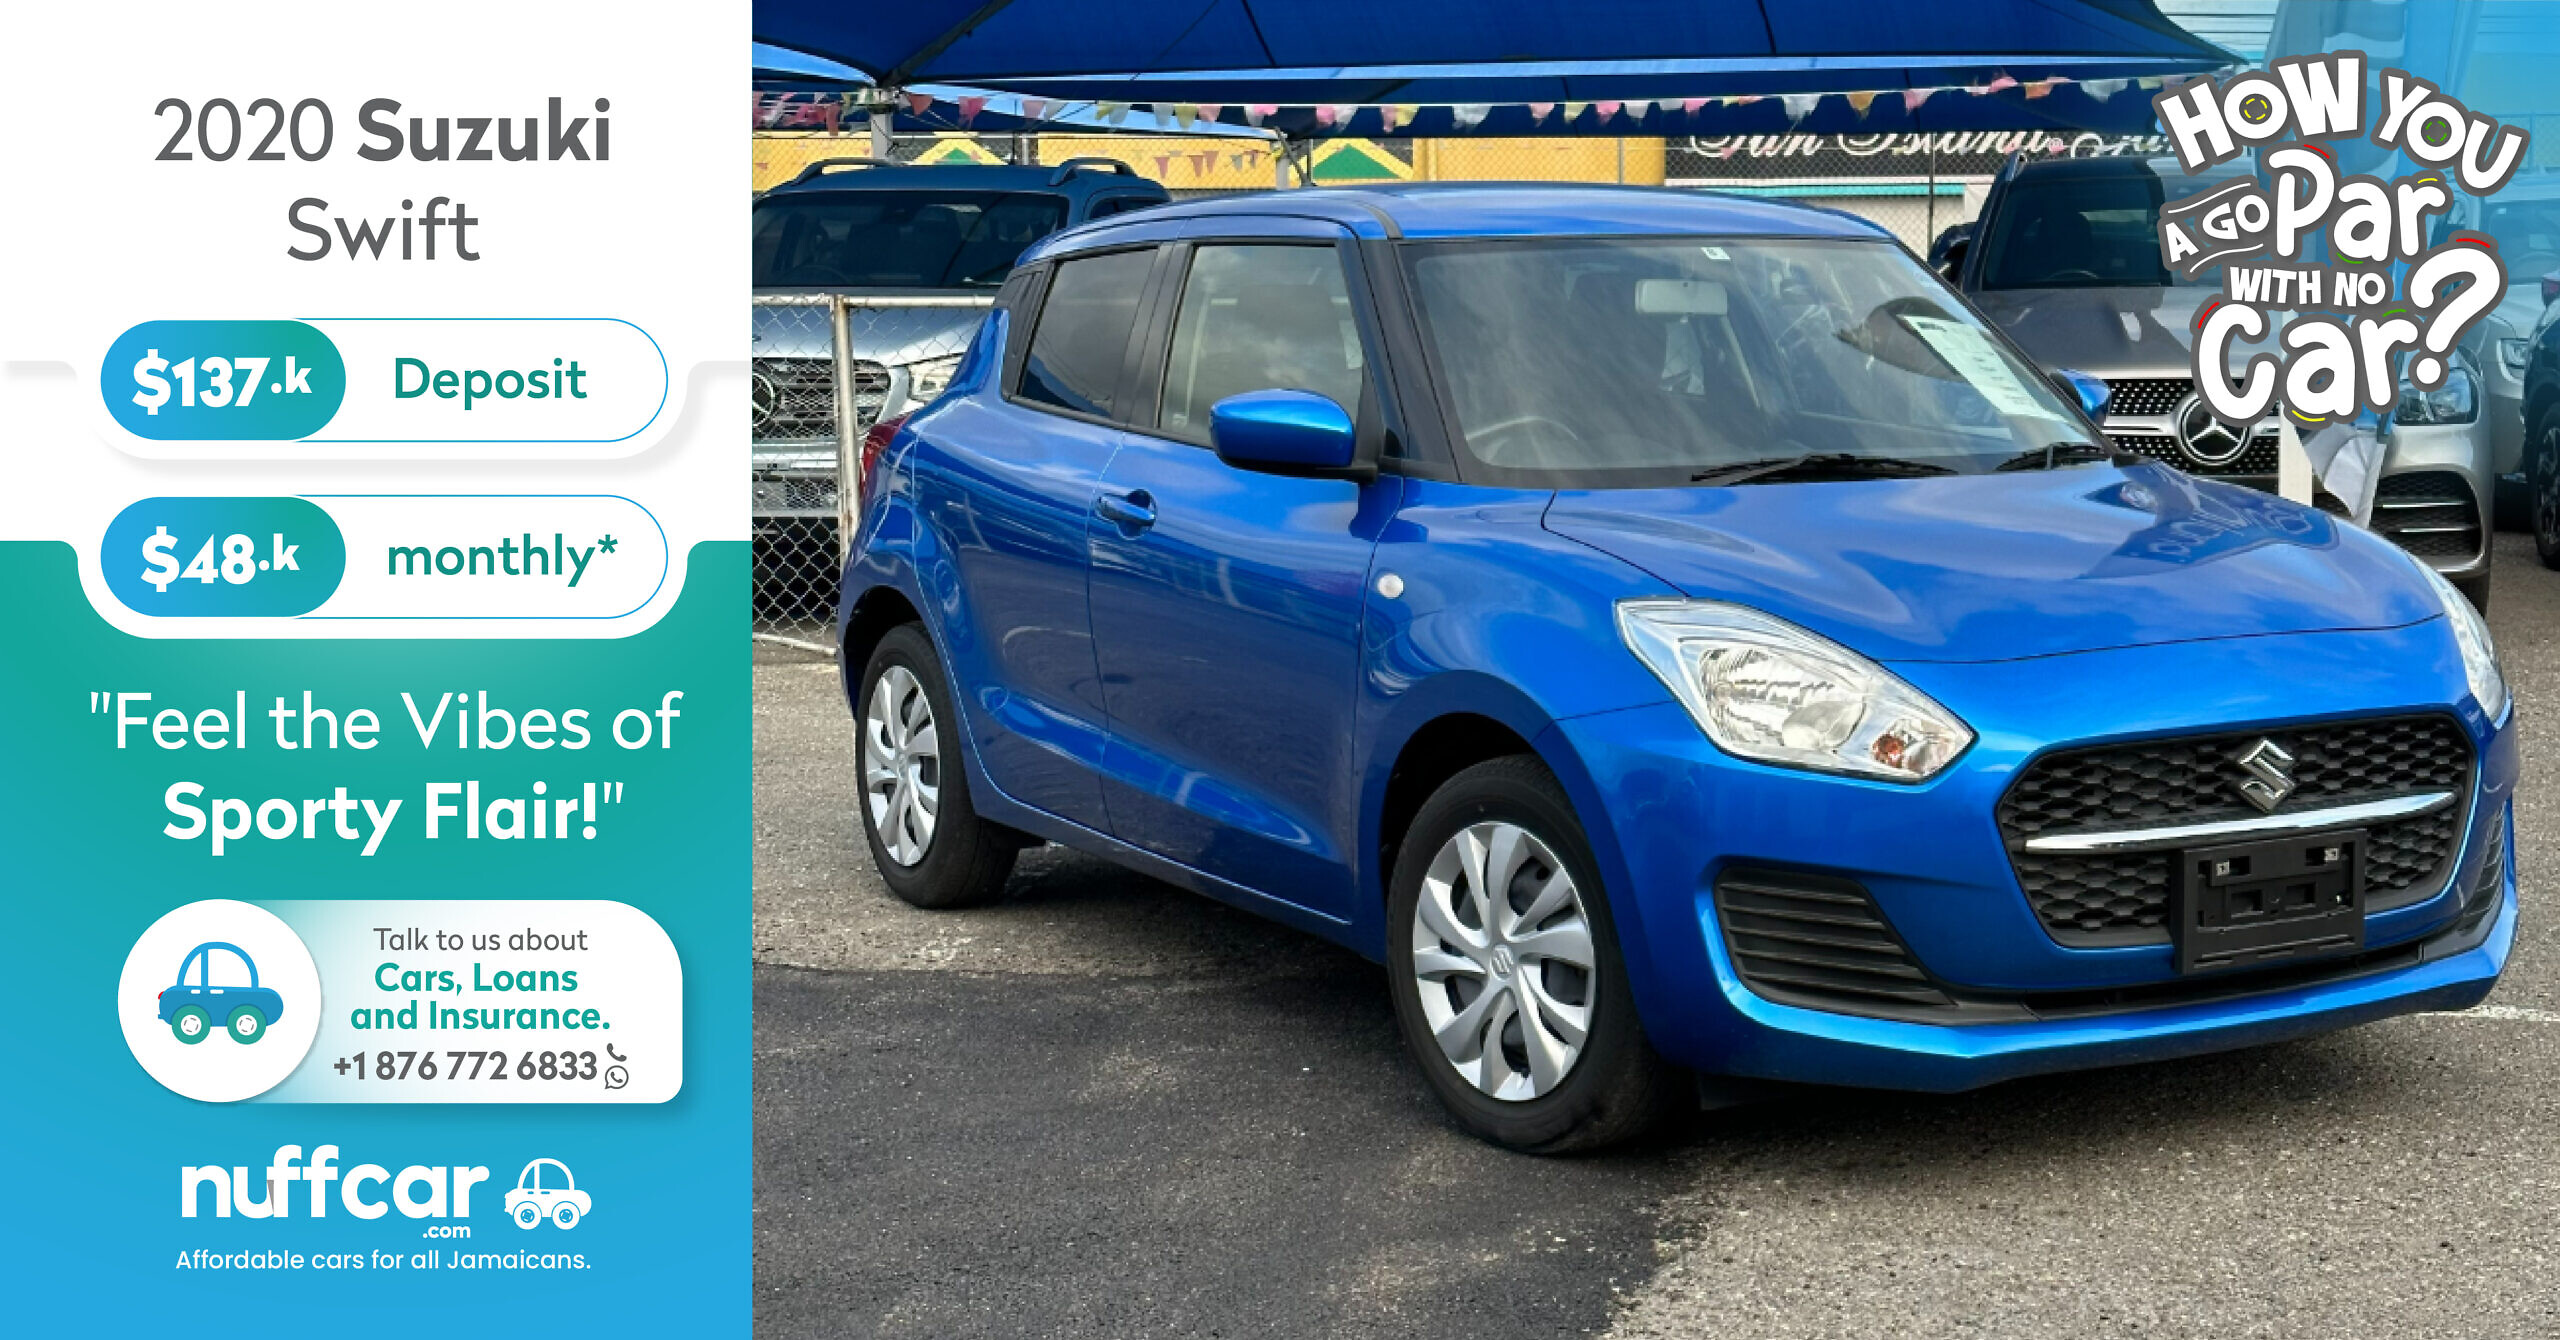 2020 Suzuki Swift – Get a Fast n Easy Low Deposit Car Loan